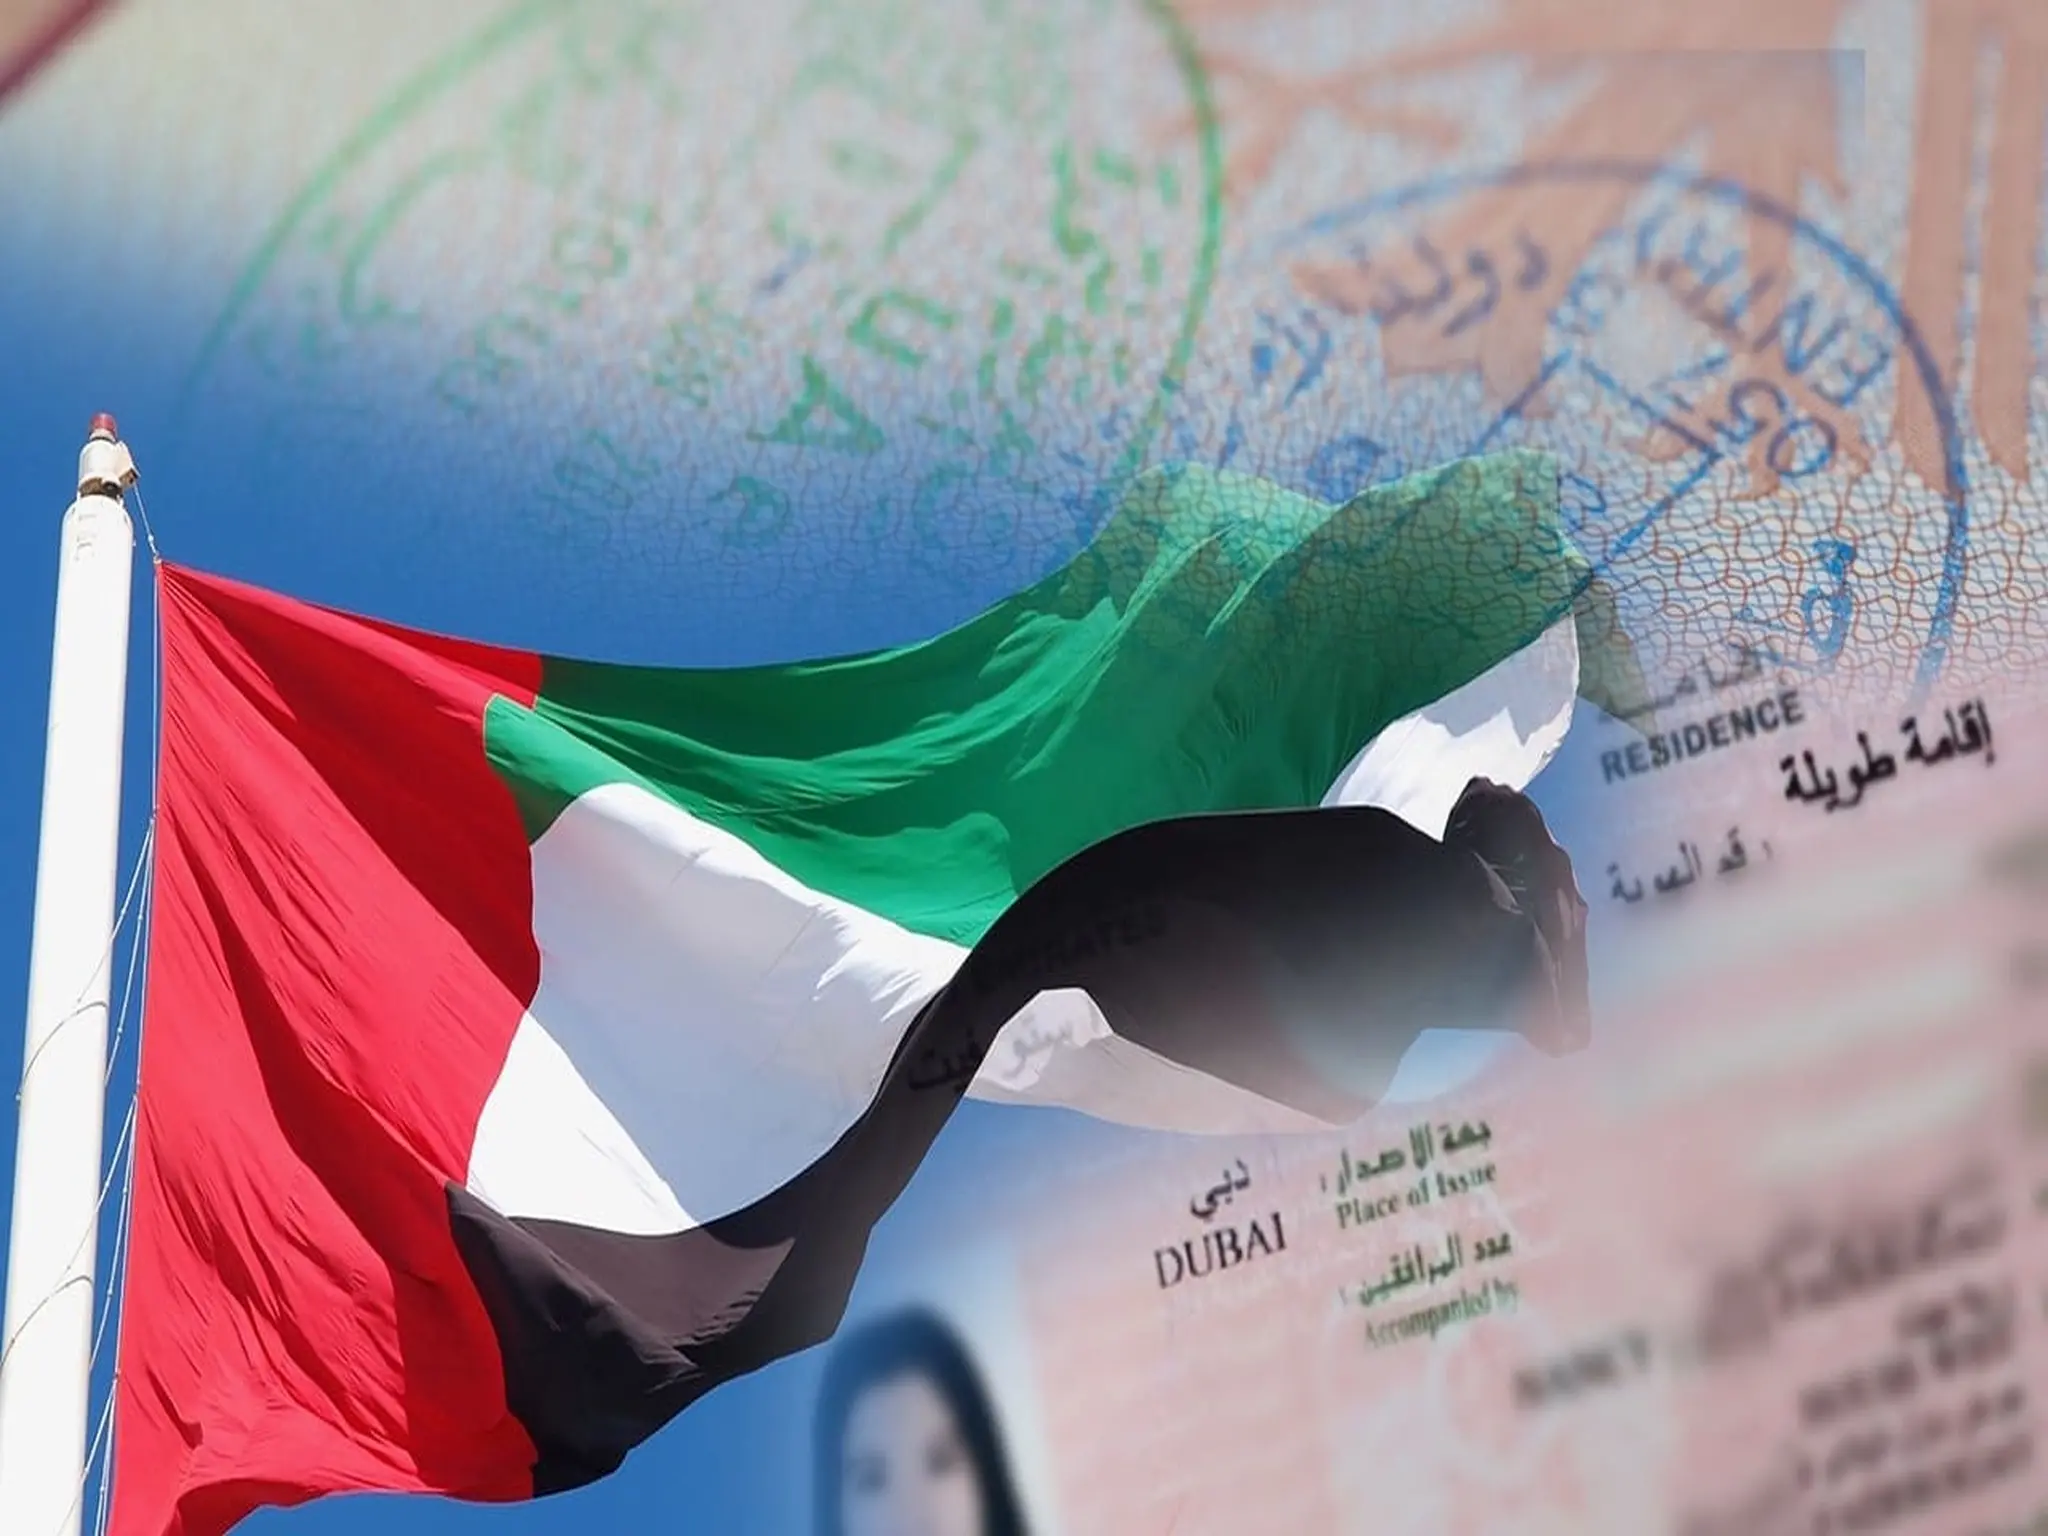 الإمارات توفر 33 خدمة في تطبيق تم للجنسية والإقامة والهوية والتأشيرات الإماراتية